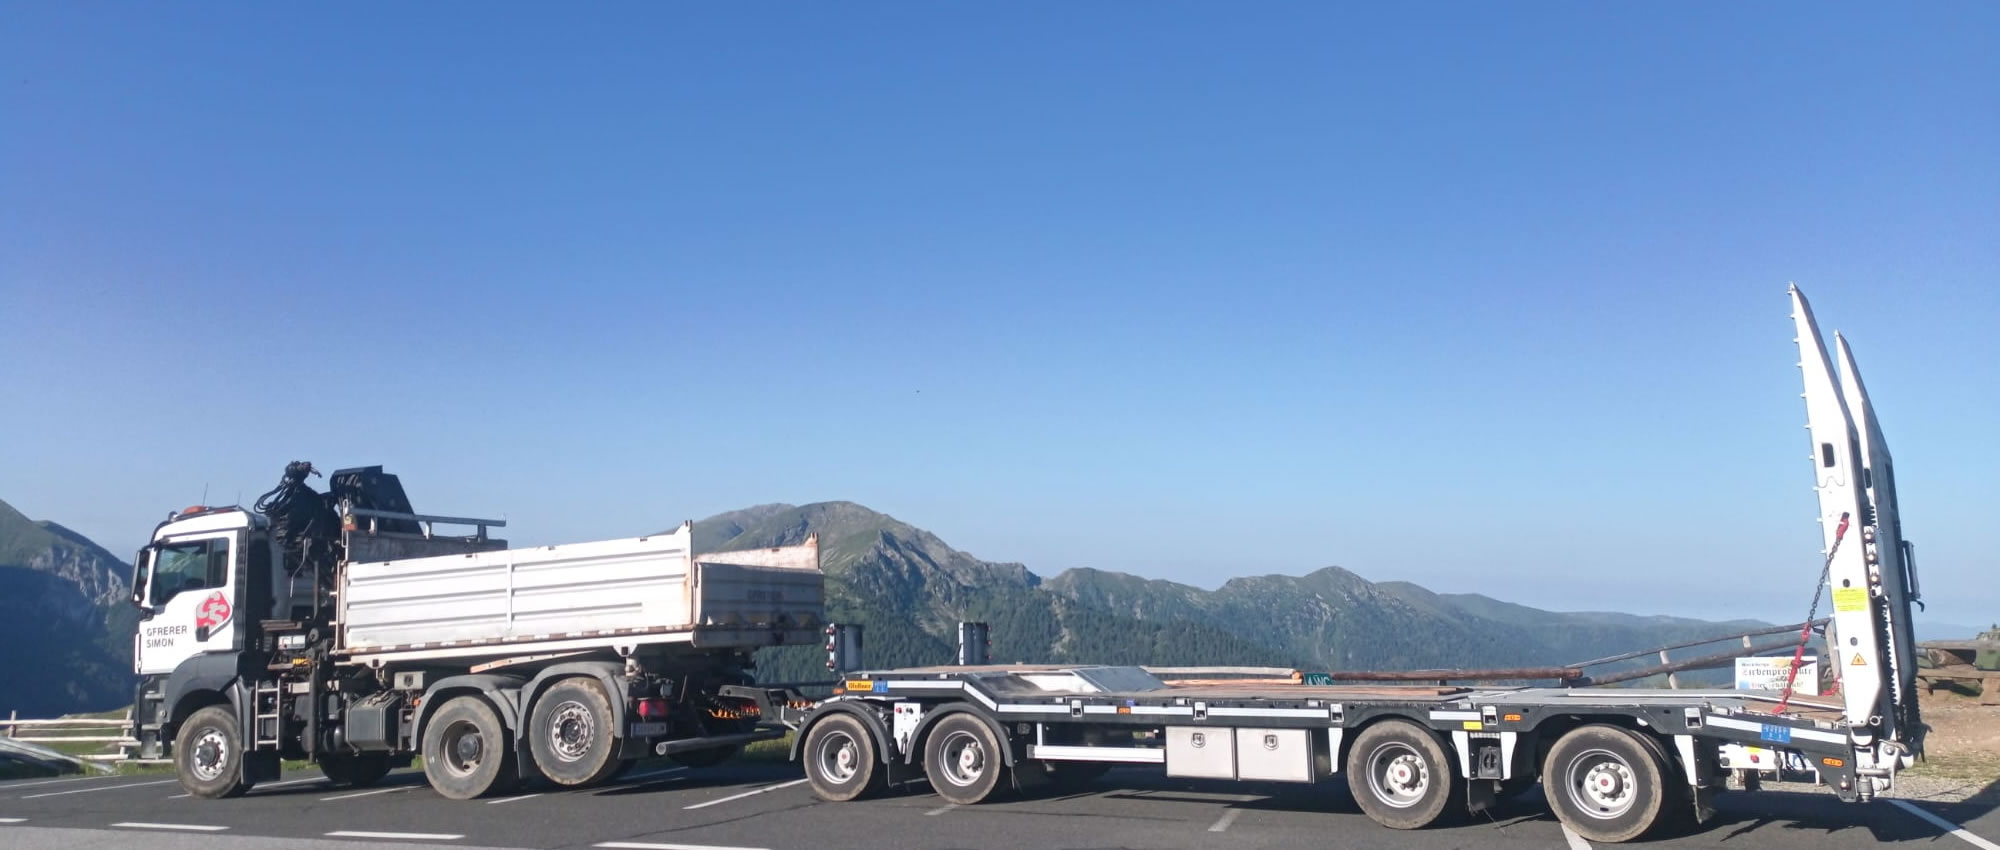 Gfrerer Simon GmbH & CO KG - Ihr Partner für Transporte in Salzburg, Oberösterreich und Kärnten